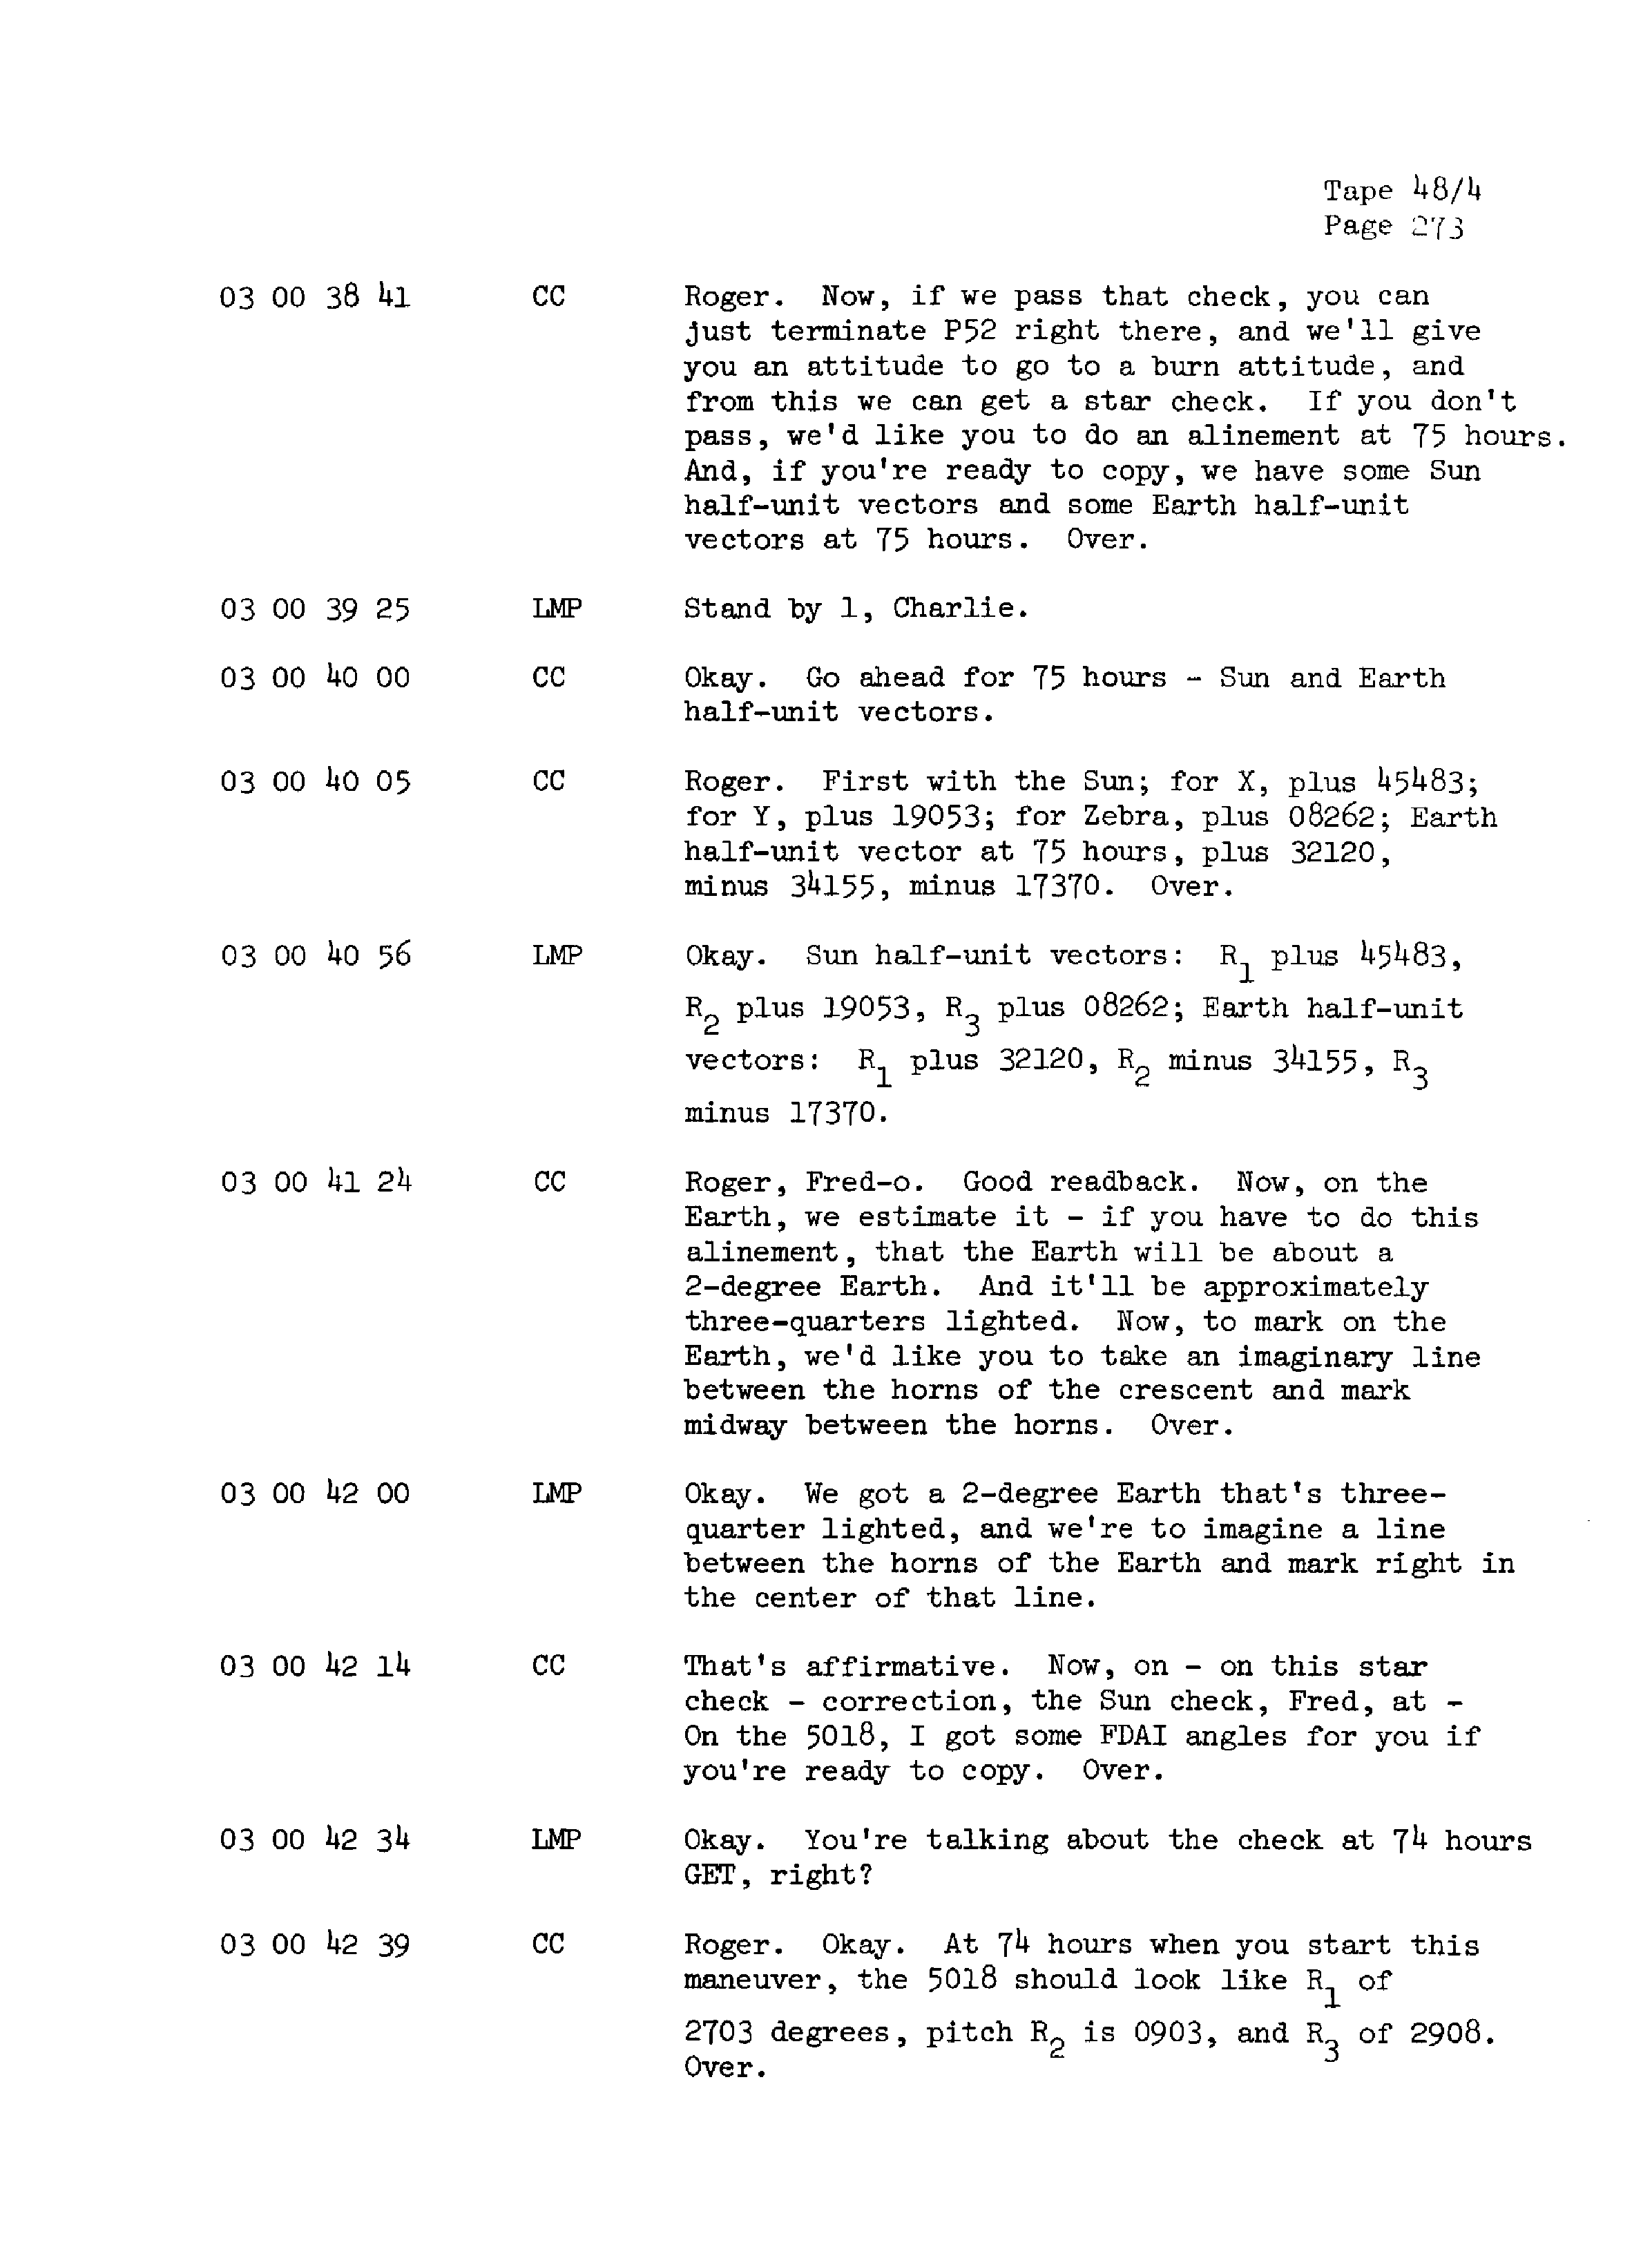 Page 280 of Apollo 13’s original transcript